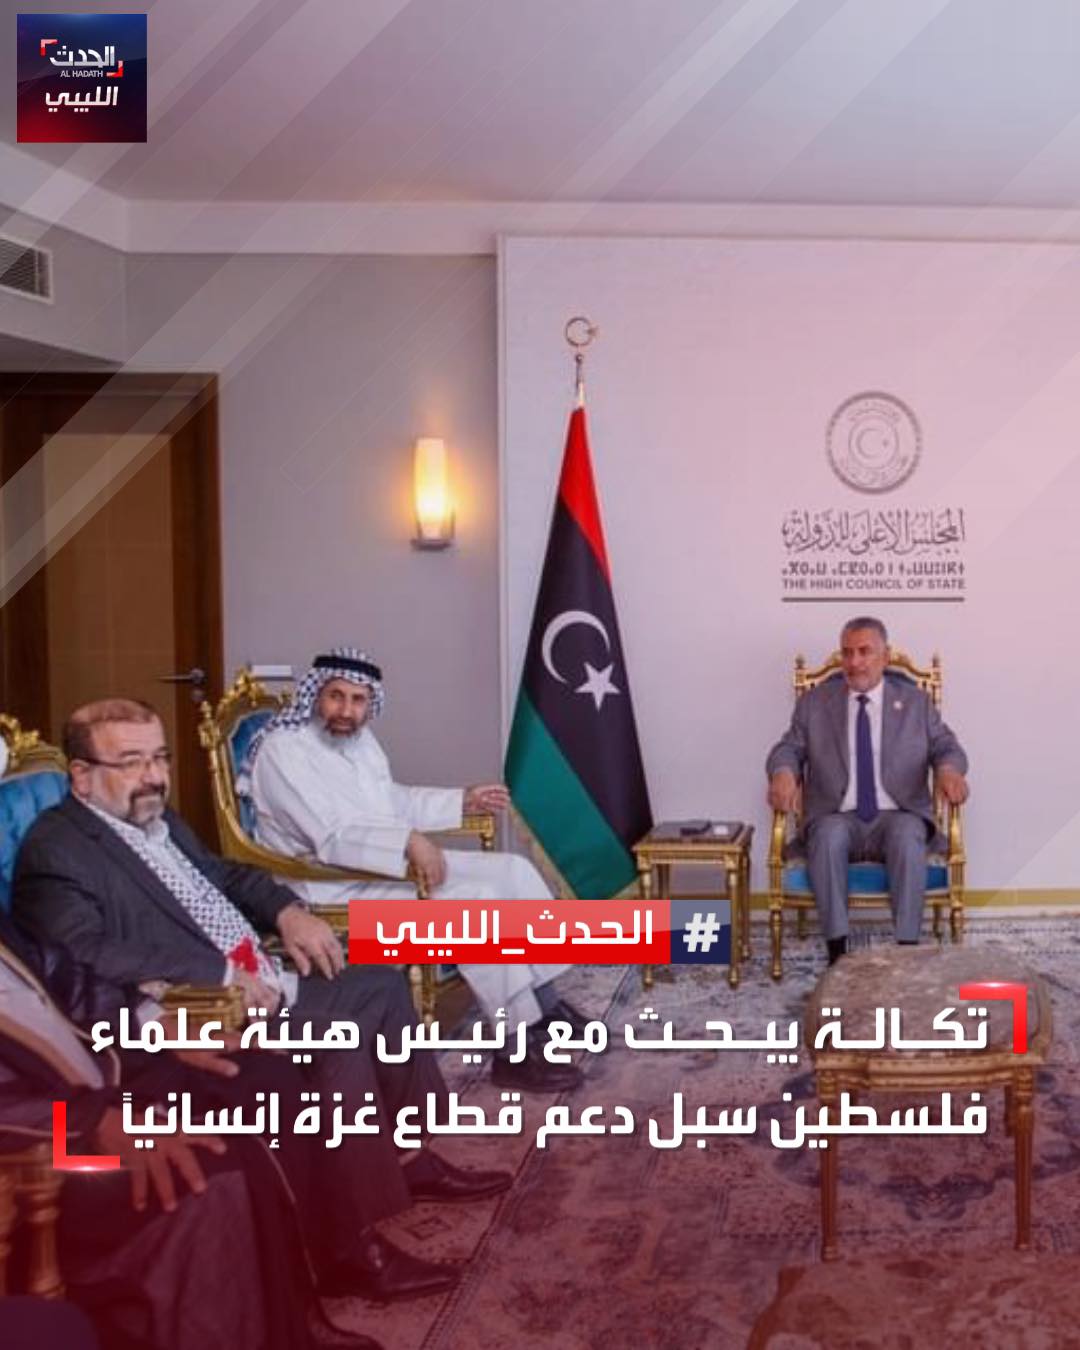 الهيئة تجتمع برئيس المجلس الأعلى للدولة في ليبيا